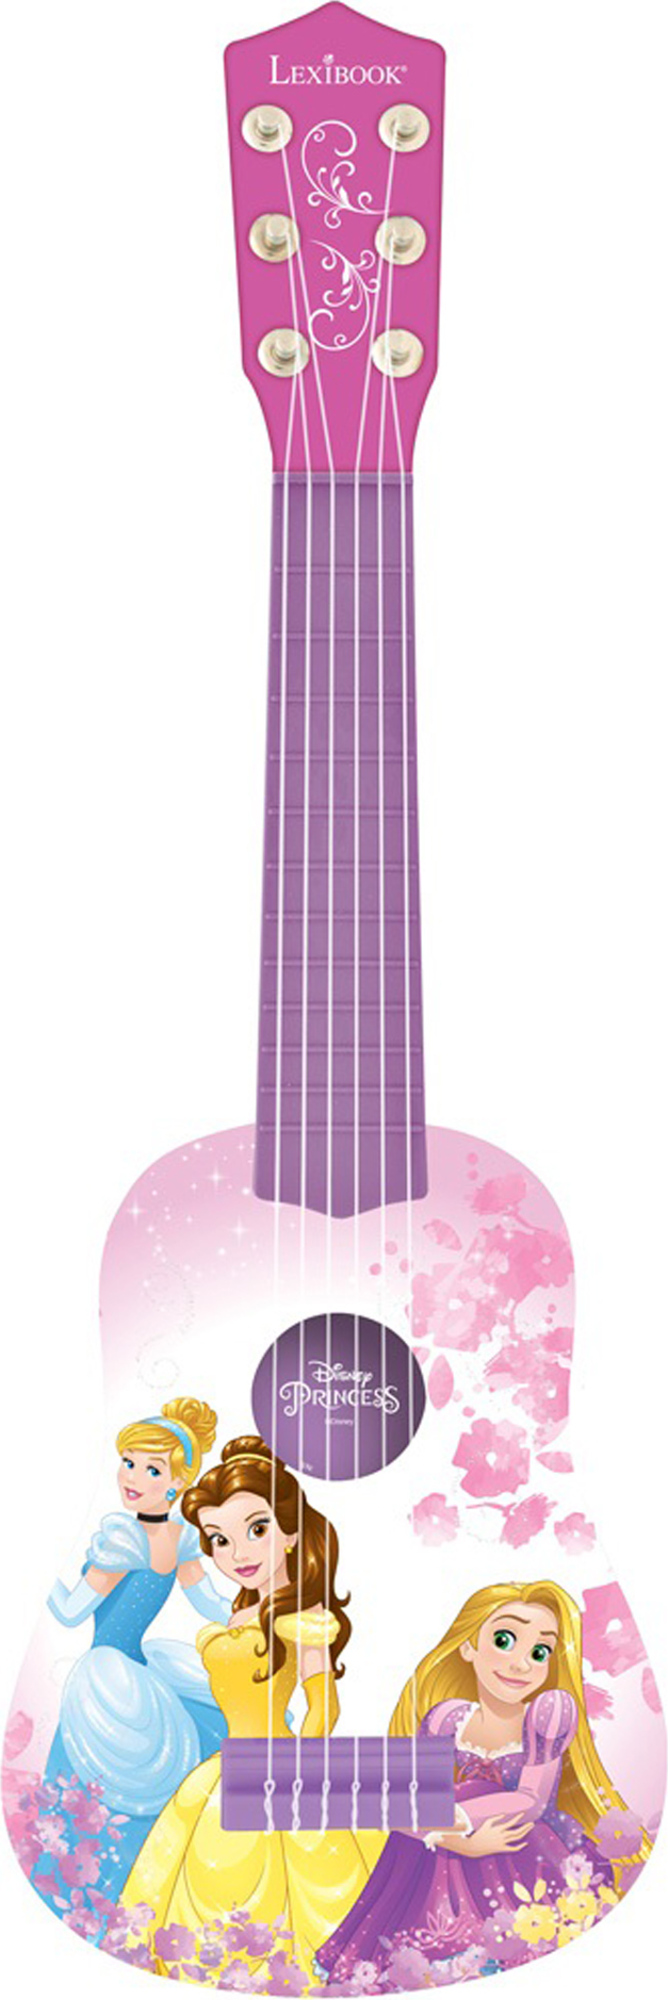 Moje první kytara 21" Disney Princezny